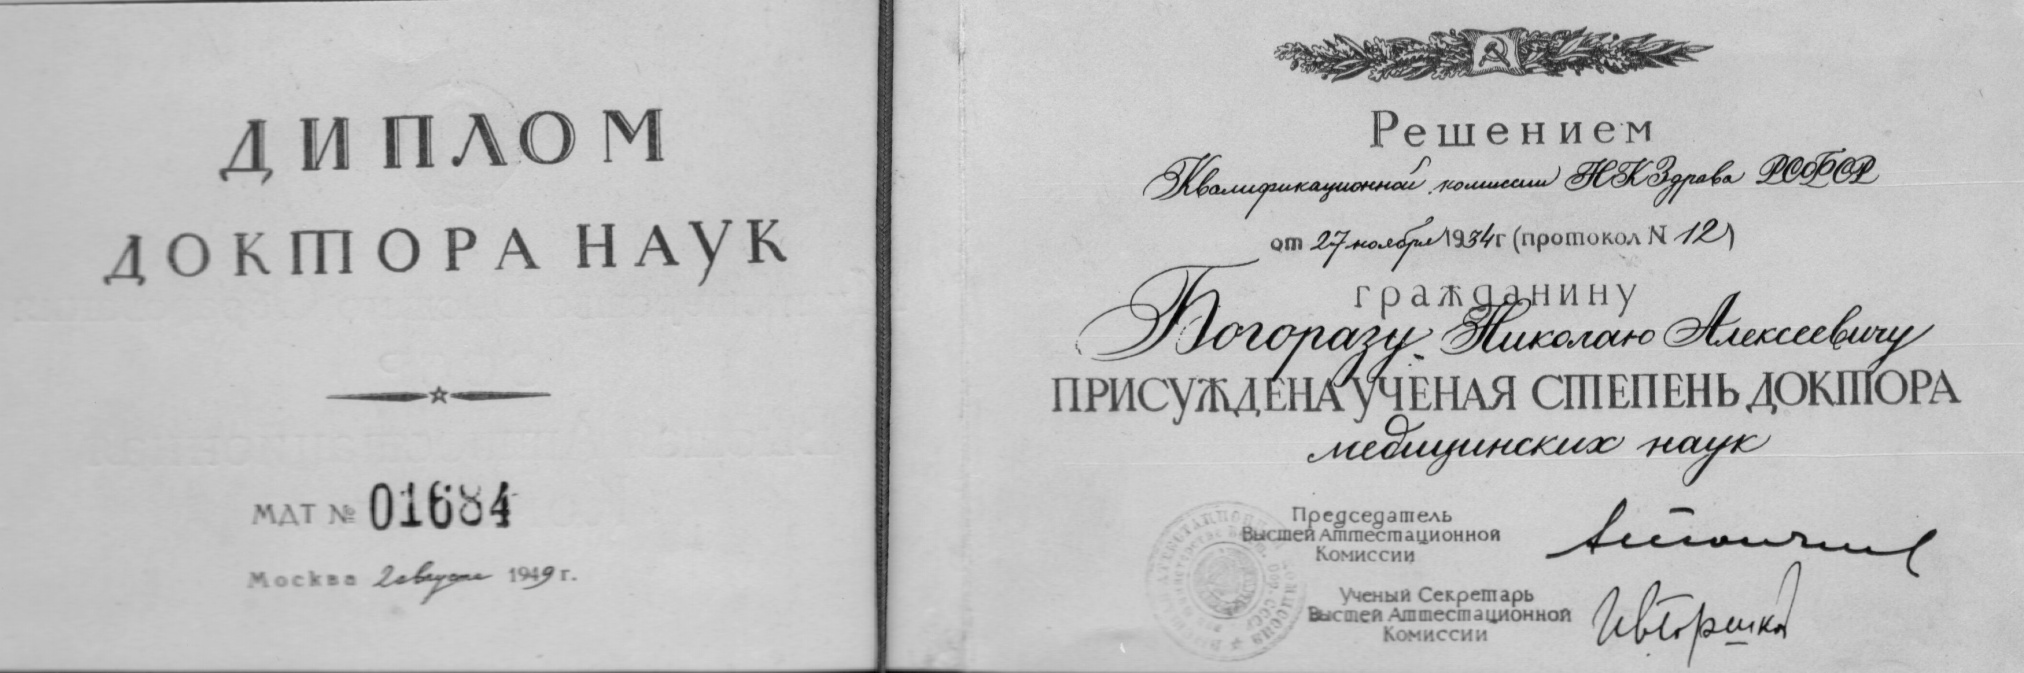 Диплом доктора медицинских наук Богораза Н.А. бумага типографская печать - СССР 1949